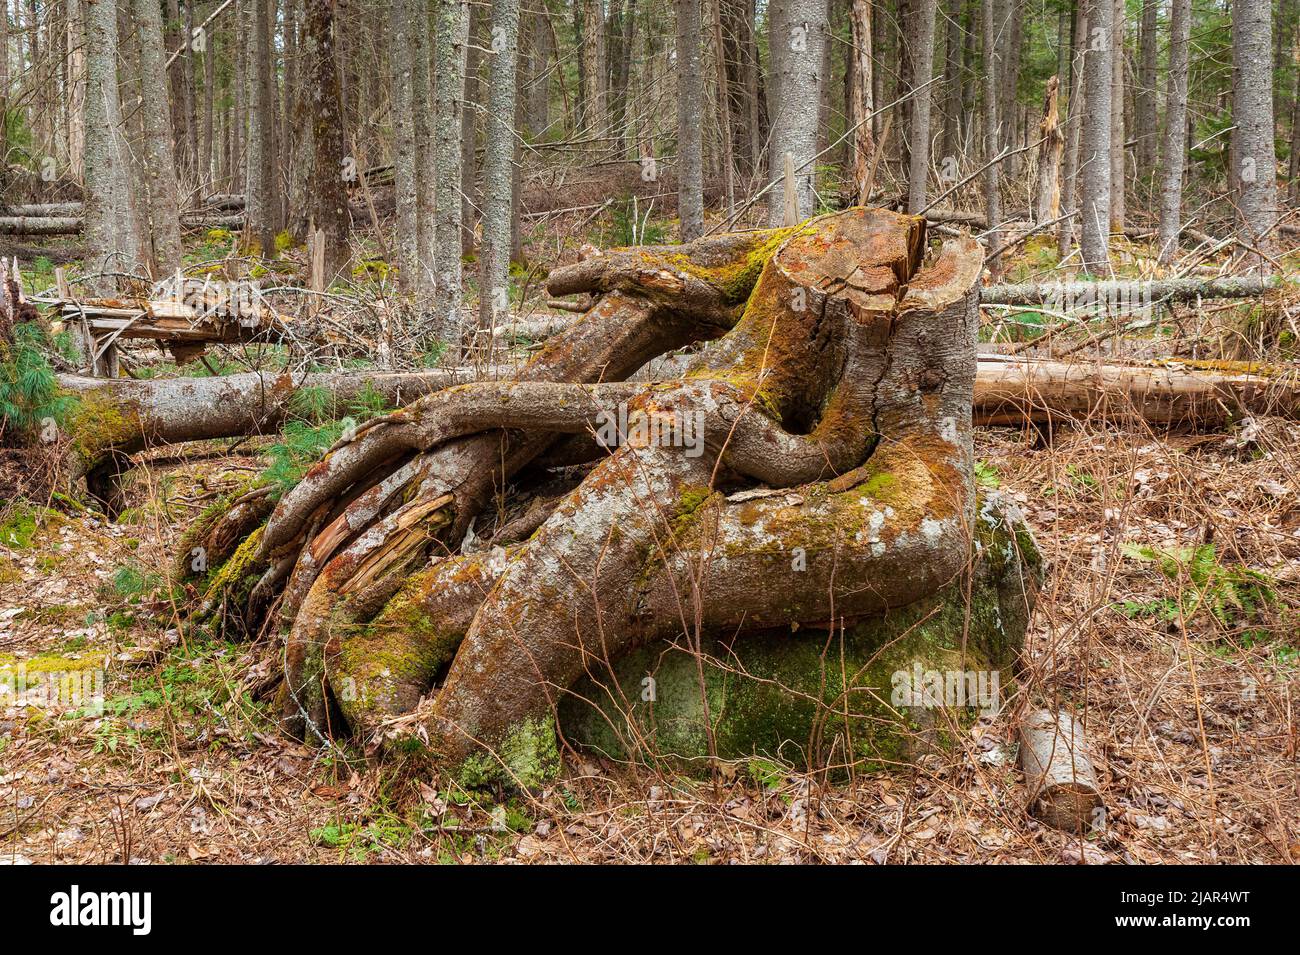 Verschlungene Wurzeln eines Baumstumpfes auf einem Felsen, in Nadelwäldern mit umgestürzten Bäumen. Paul Smith's College Visitor Interpretive Center, New York. Stockfoto